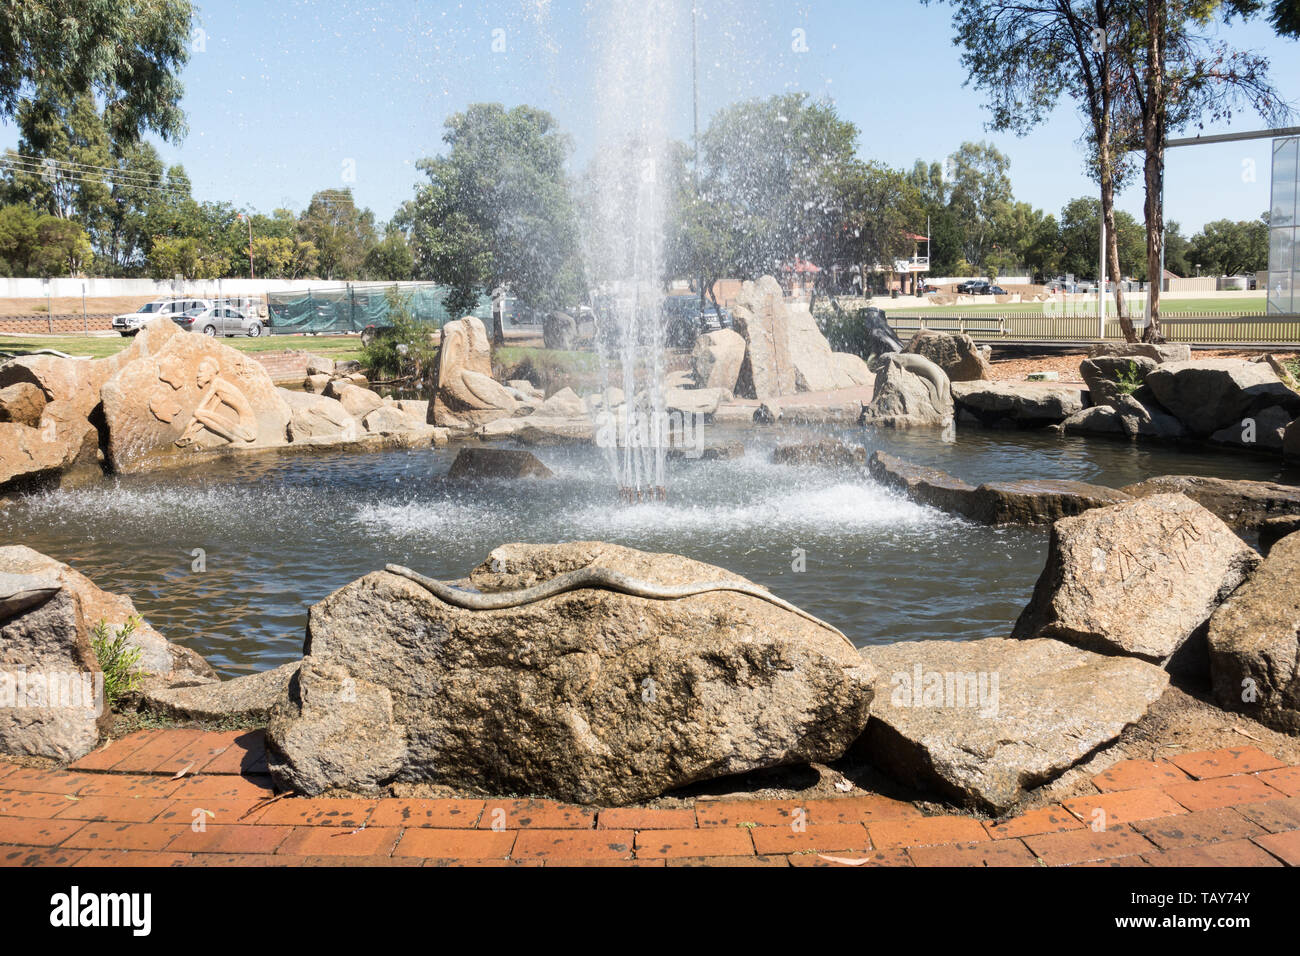 Rock Sculpture d'un serpent au Parc de la fontaine du bicentenaire de l'Australie Tamworth. Banque D'Images